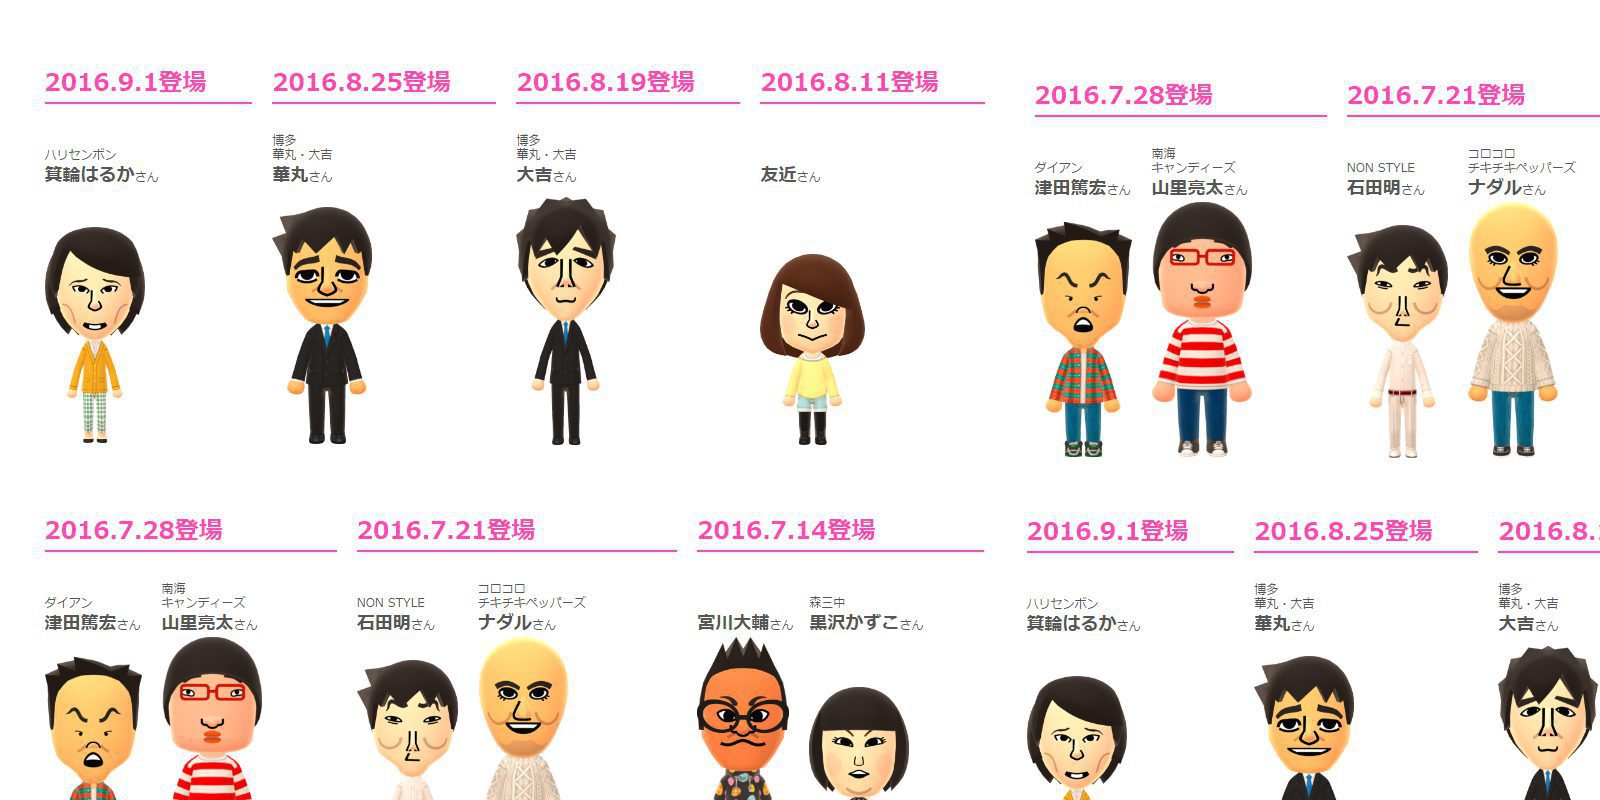 Los famosos ya usan 'Miitomo' en Japón